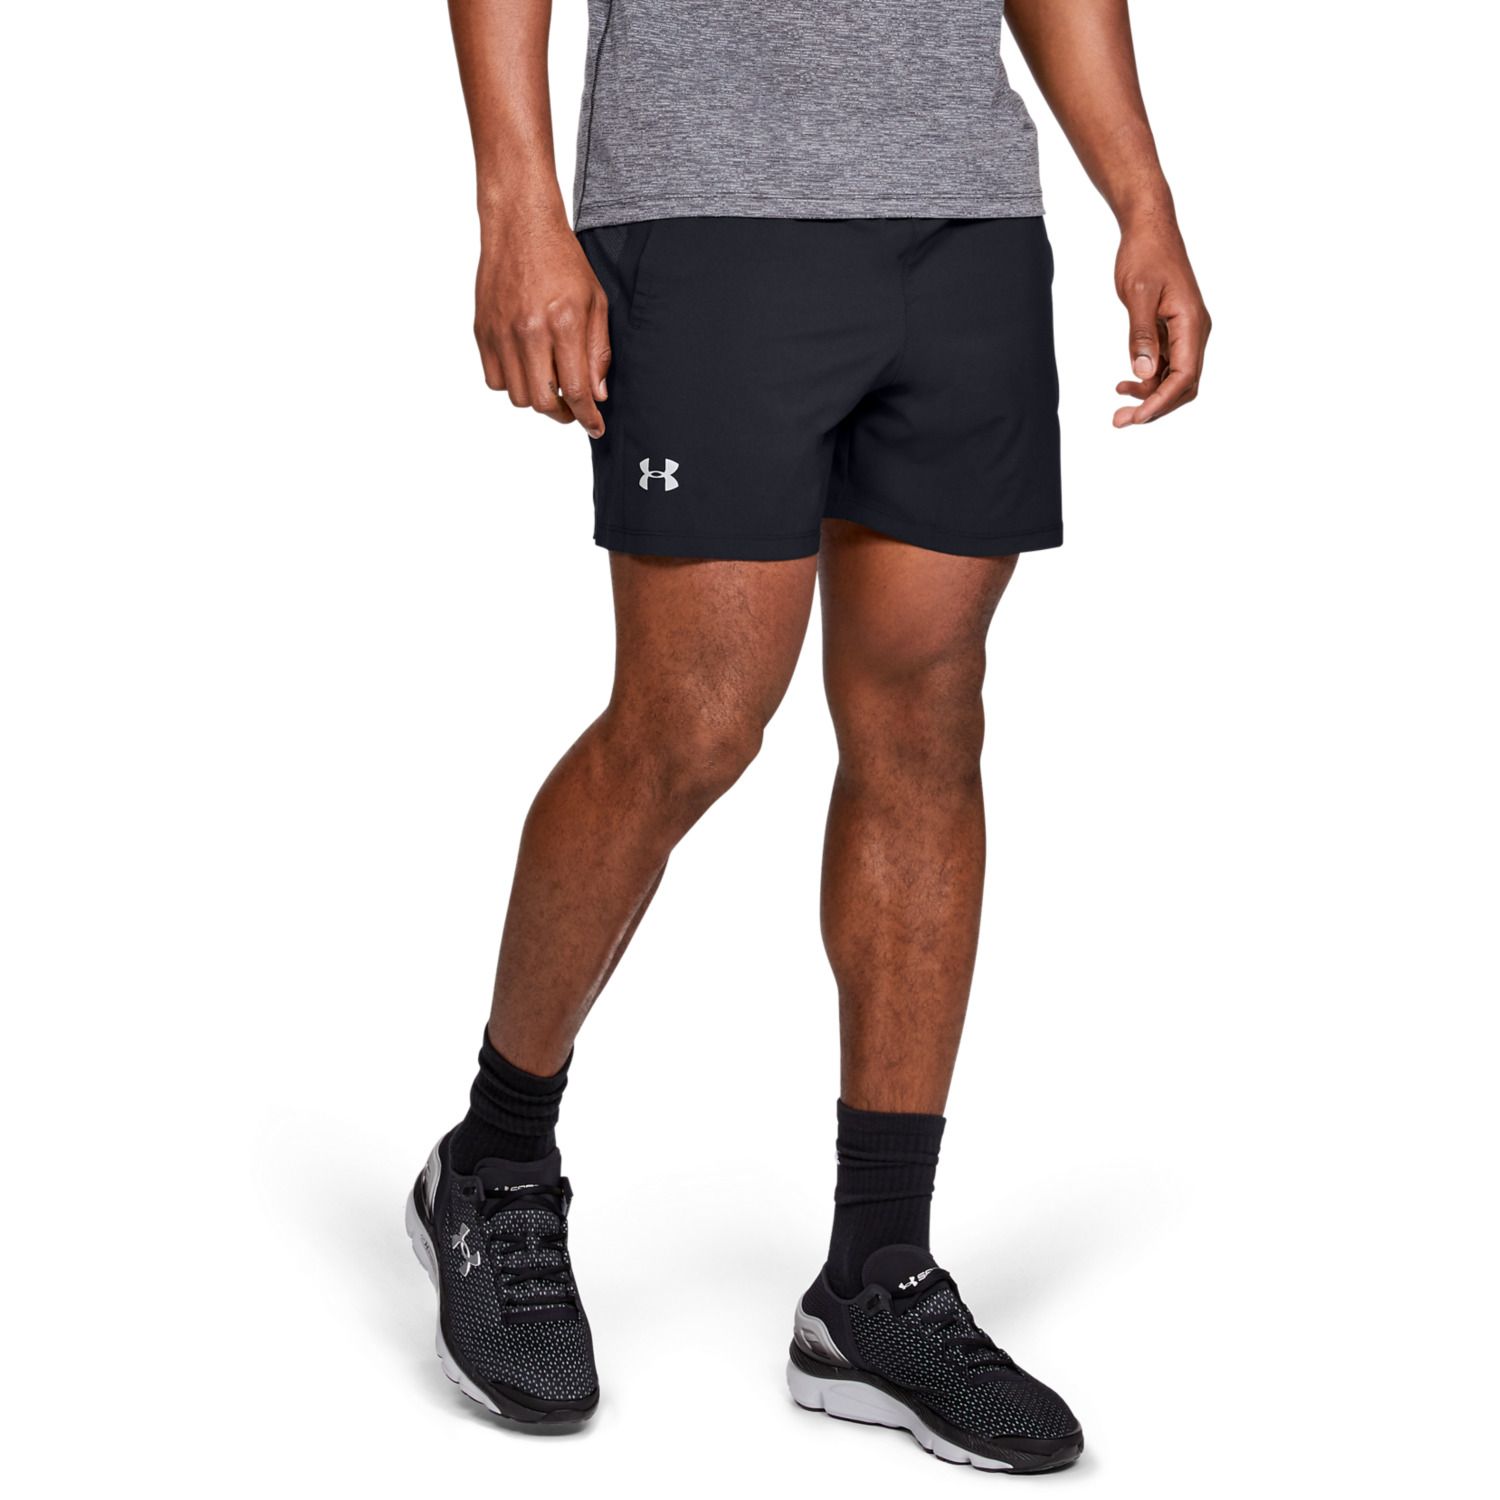 Men's Under Armour Shorts: Shop for 